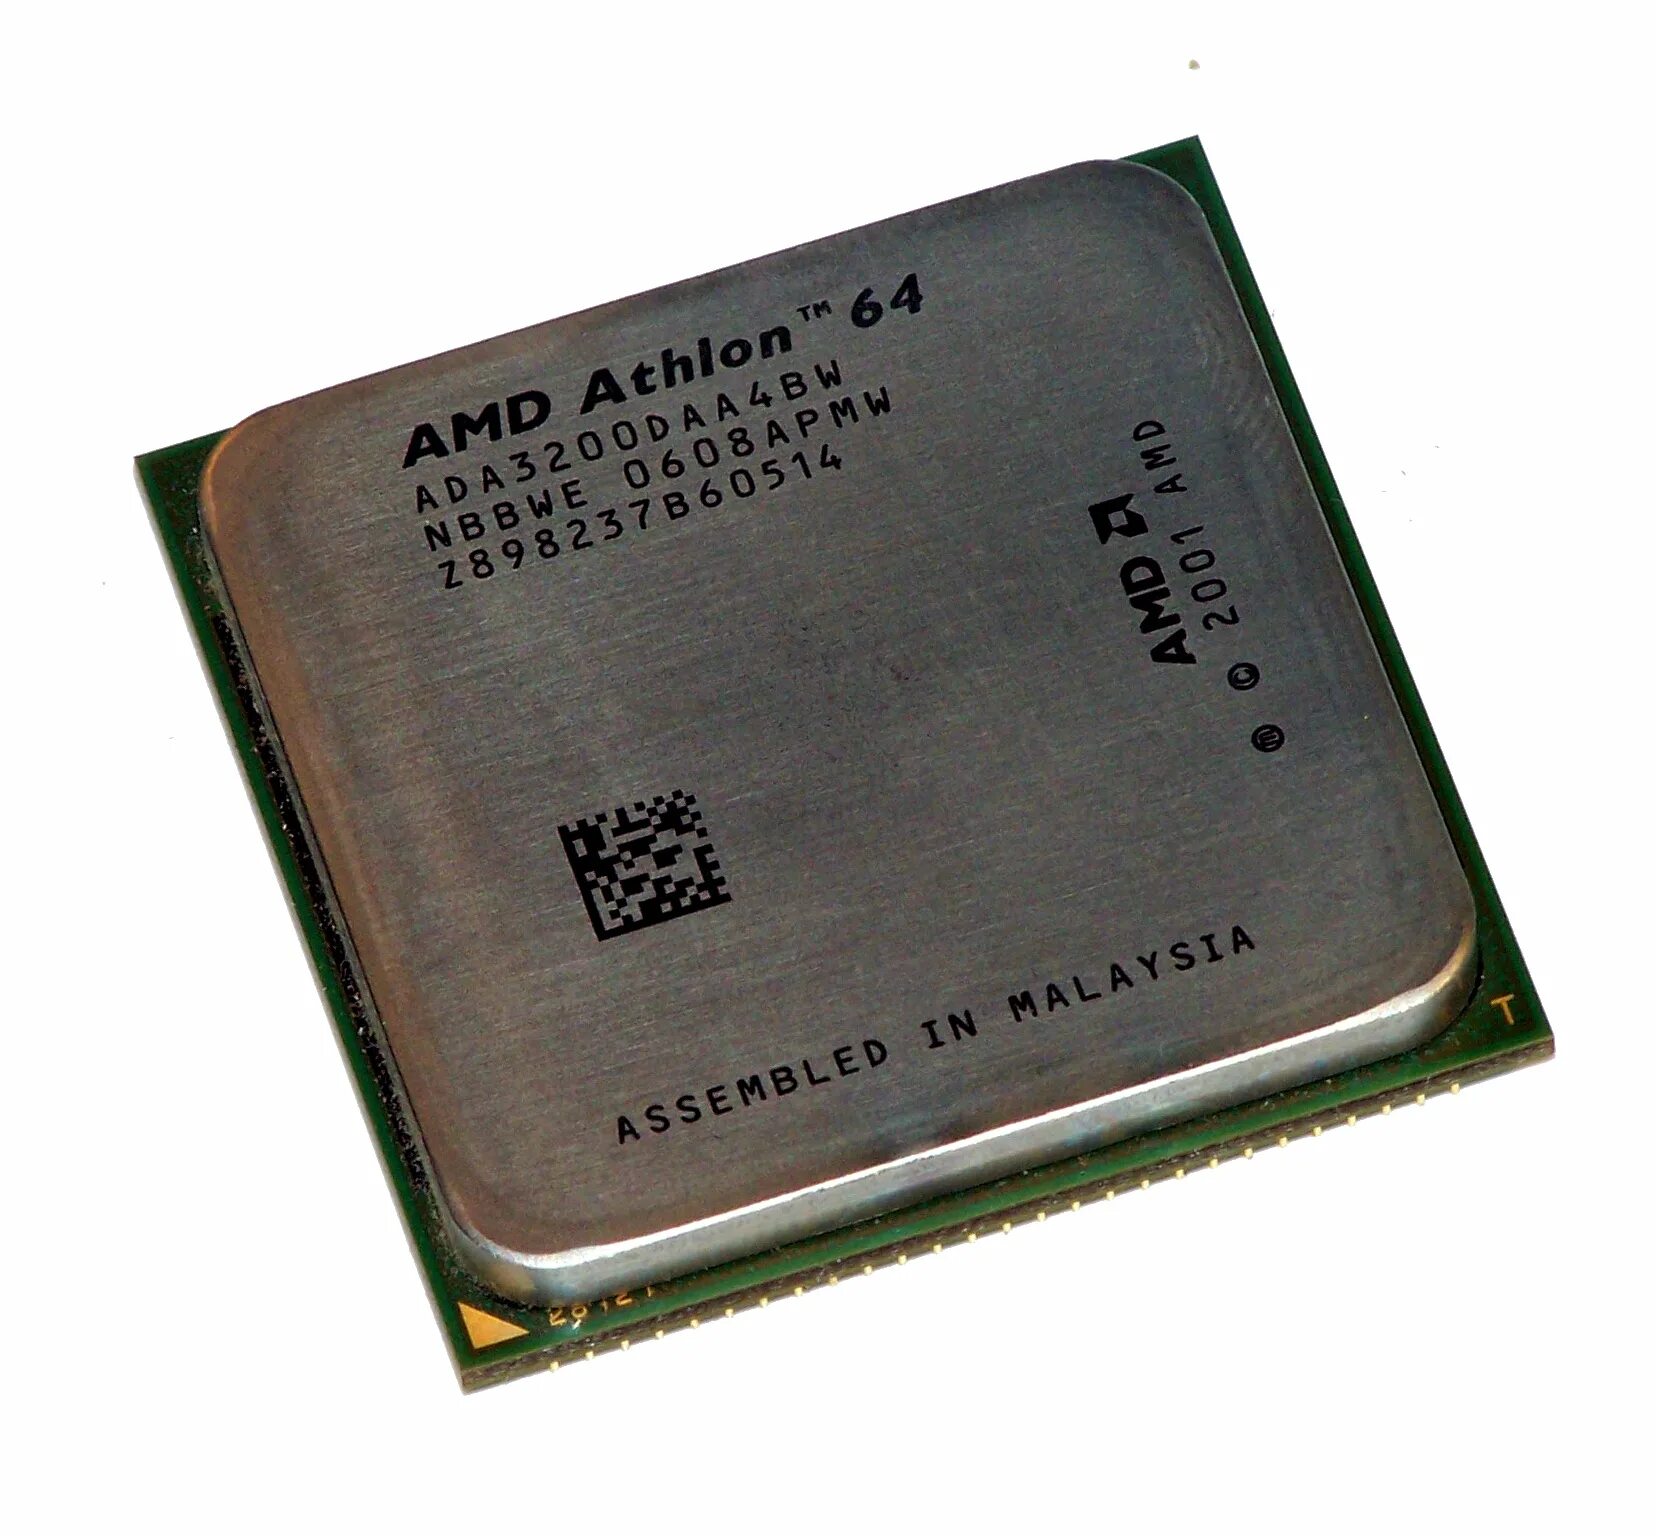 Athlon 64 купить. Процессор АМД Атлон 64. Процессор AMD Athlon 64 Socket 939. AMD Athlon 64 2001 процессор. Процессор АМД 64 ada3200daa4bw LBBWE 0601gpaw 2001 год.